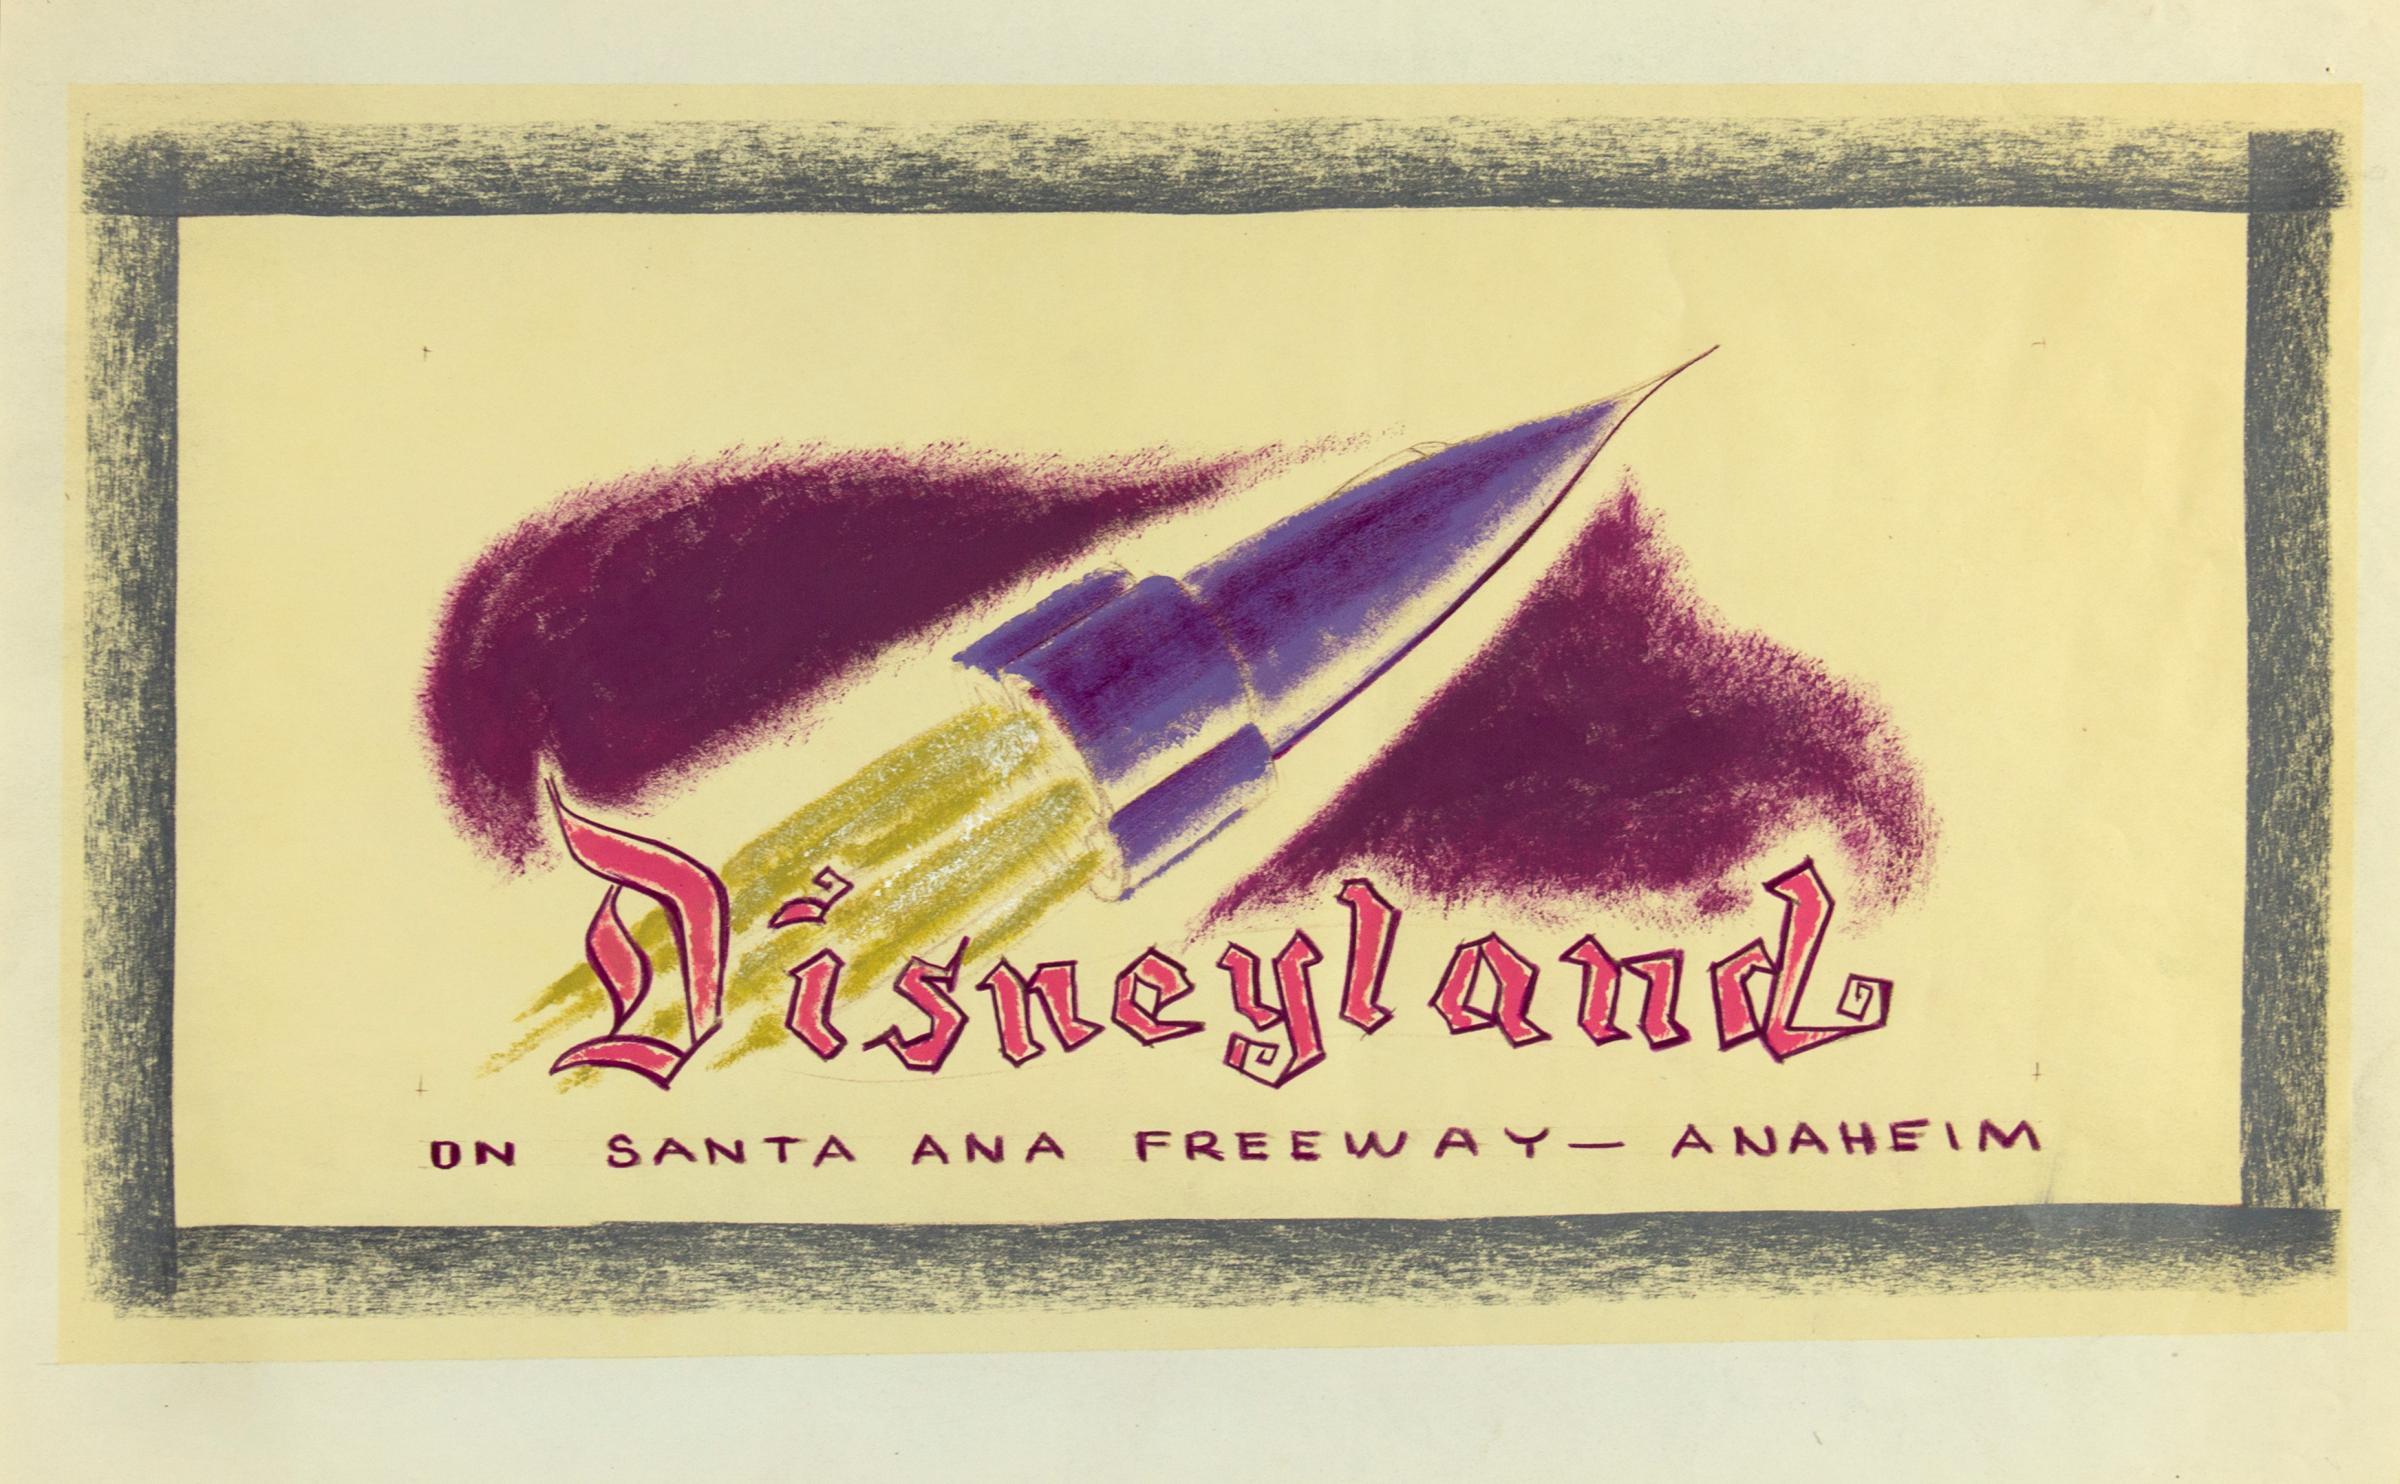 Hand-Colored Disneyland Billboard Concept Brownline lot 58